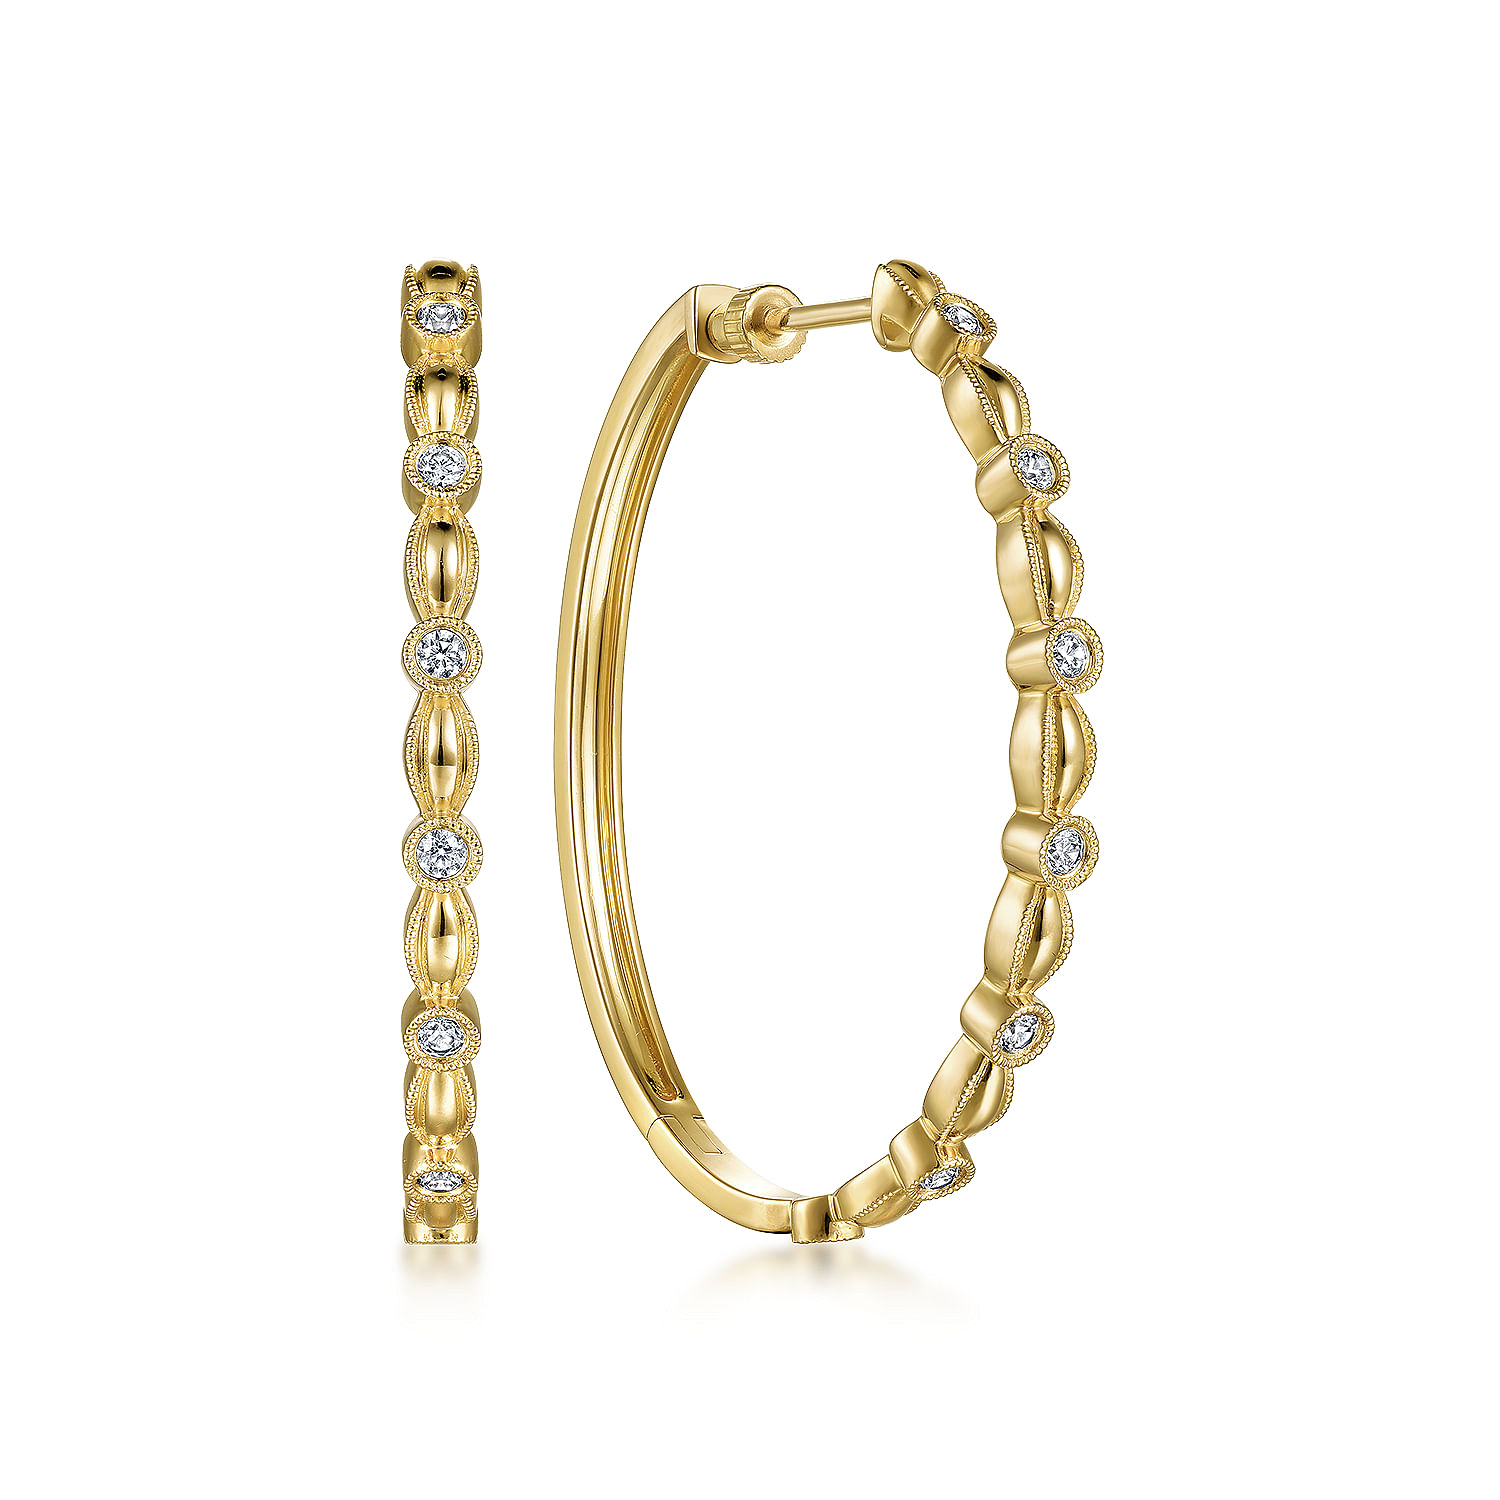 14K Yellow Gold Diamond Hoop Earrings in size 40mm